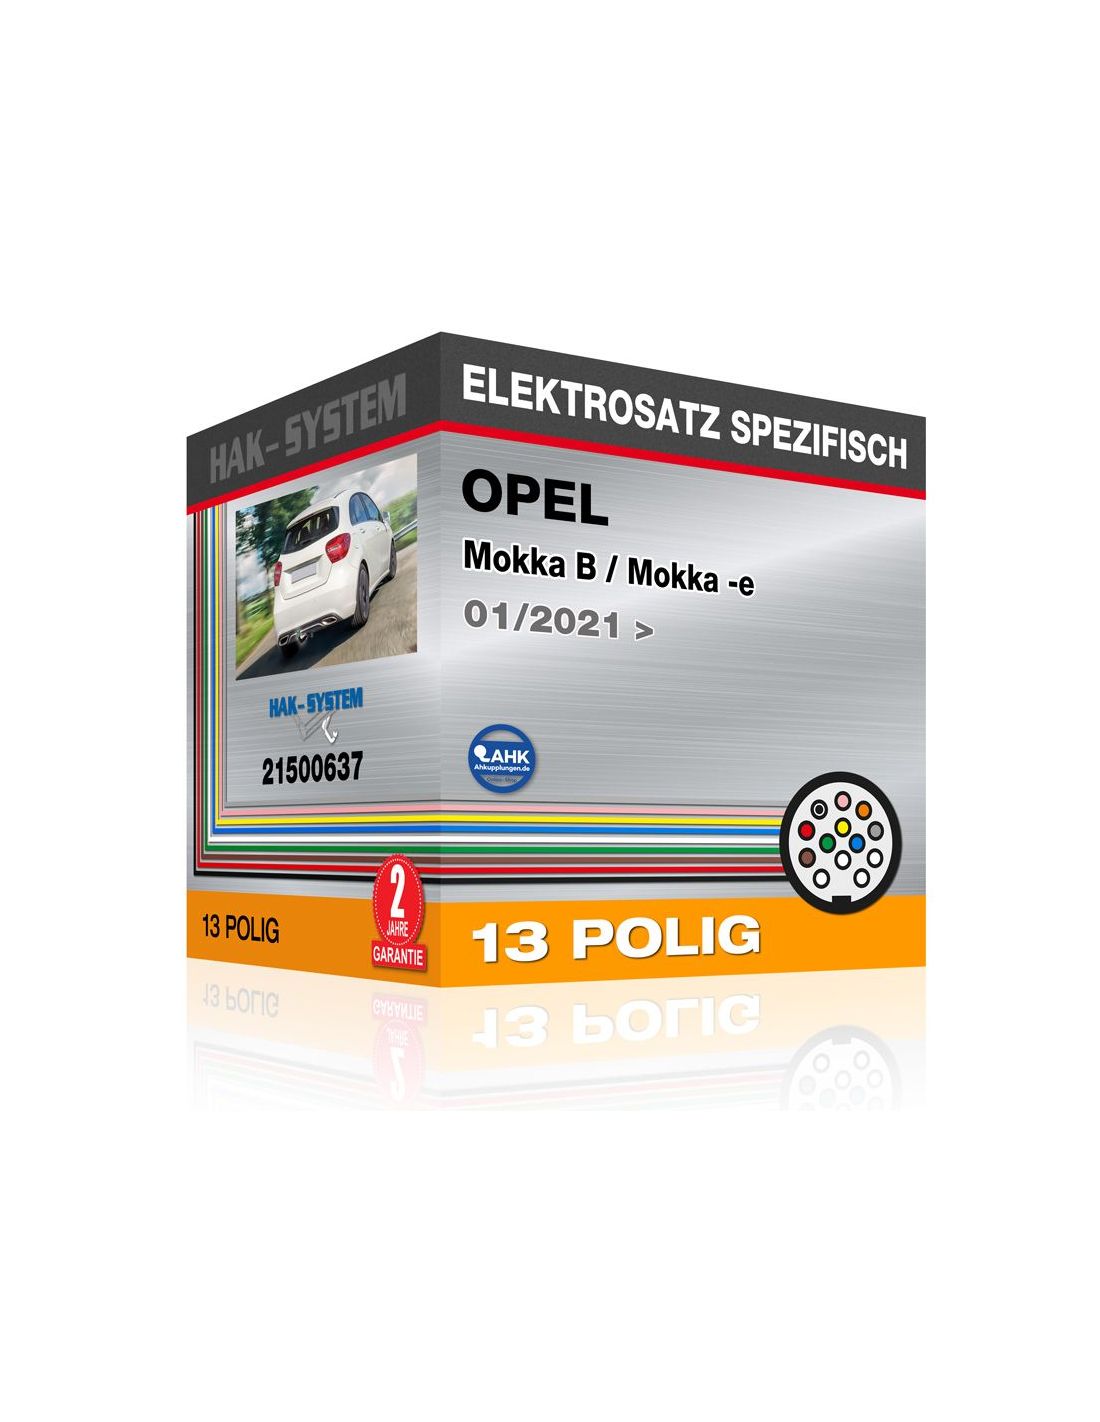 Anhängerkupplung Opel-Mokka B spez. m. Irmscher Paket, Baujahr 2021